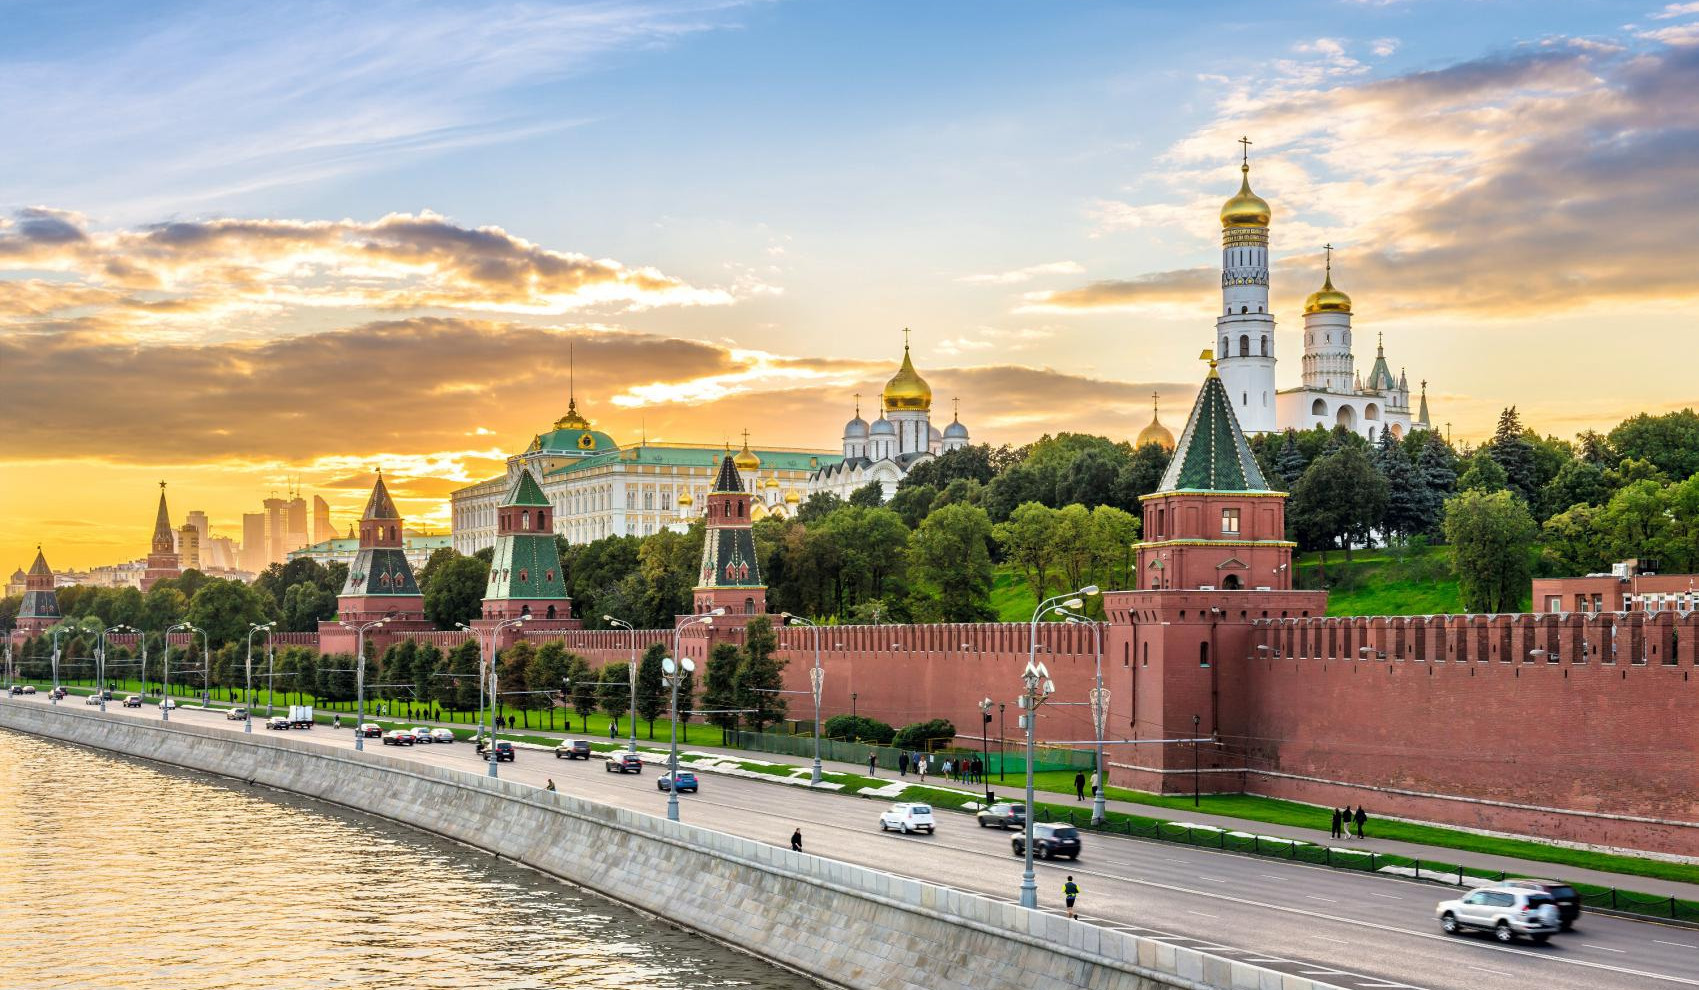 Մոսկվան և Կիևը 2022 թ. Ստամբուլի բանակցությունների ավարտին համաձայնագիր չեն ստորագրել Լոնդոնի ճնշման պատճառով. Պեսկով